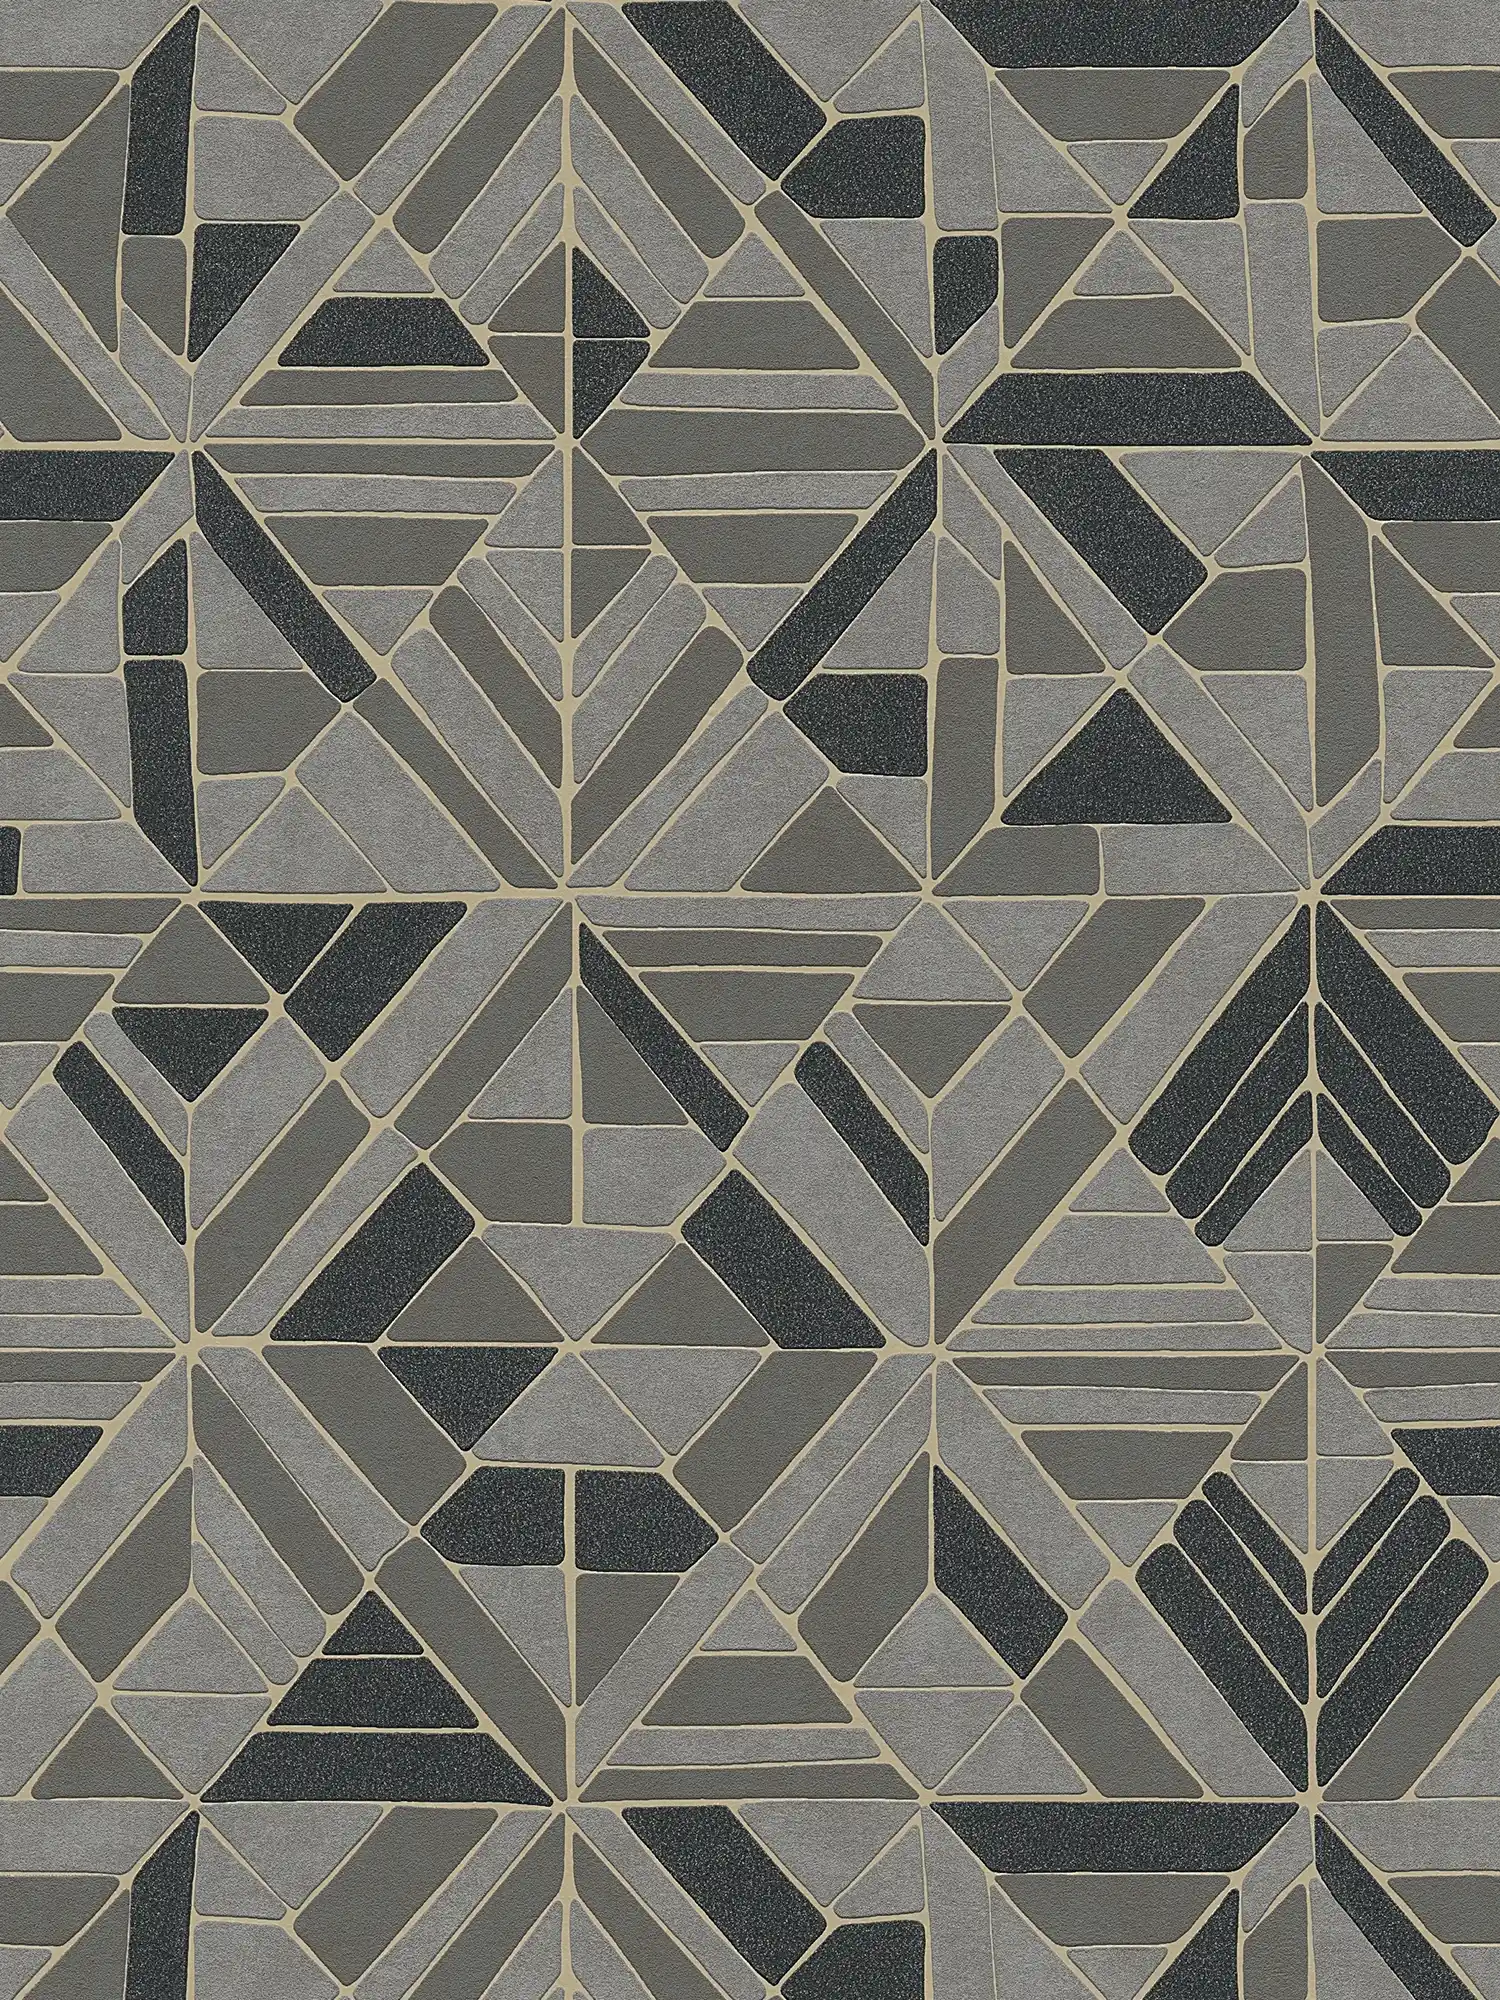 Behang geometrisch patroon & metalen accenten - bruin, zwart, goud
